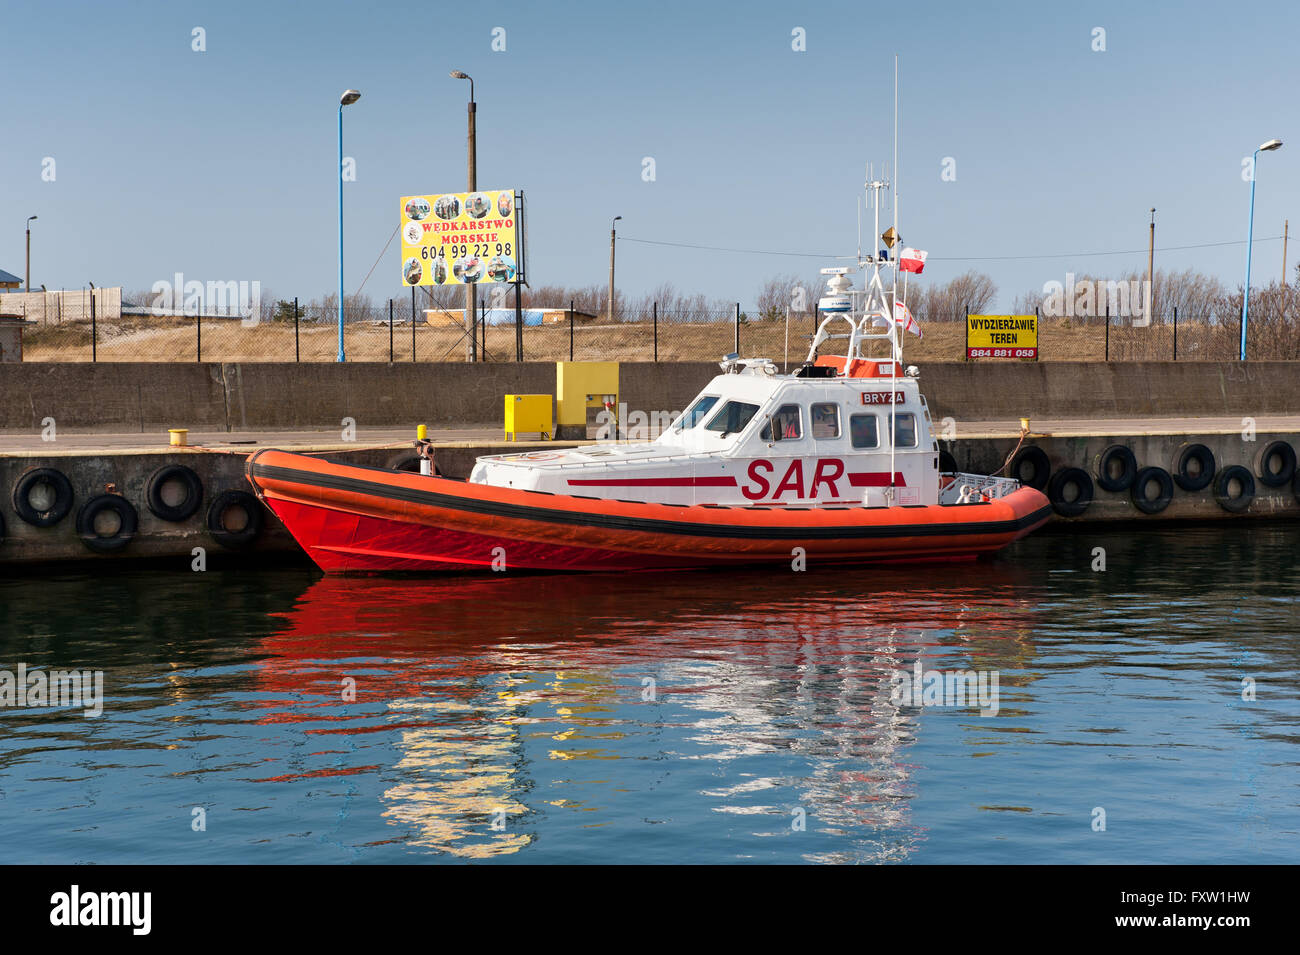 SAR-Maritime Rettung Schiff, polnischen Name, Morski Statek Ratowniczy vertäut am Ufer im Szkuner Hafen in Wladyslawowo, Polen Stockfoto